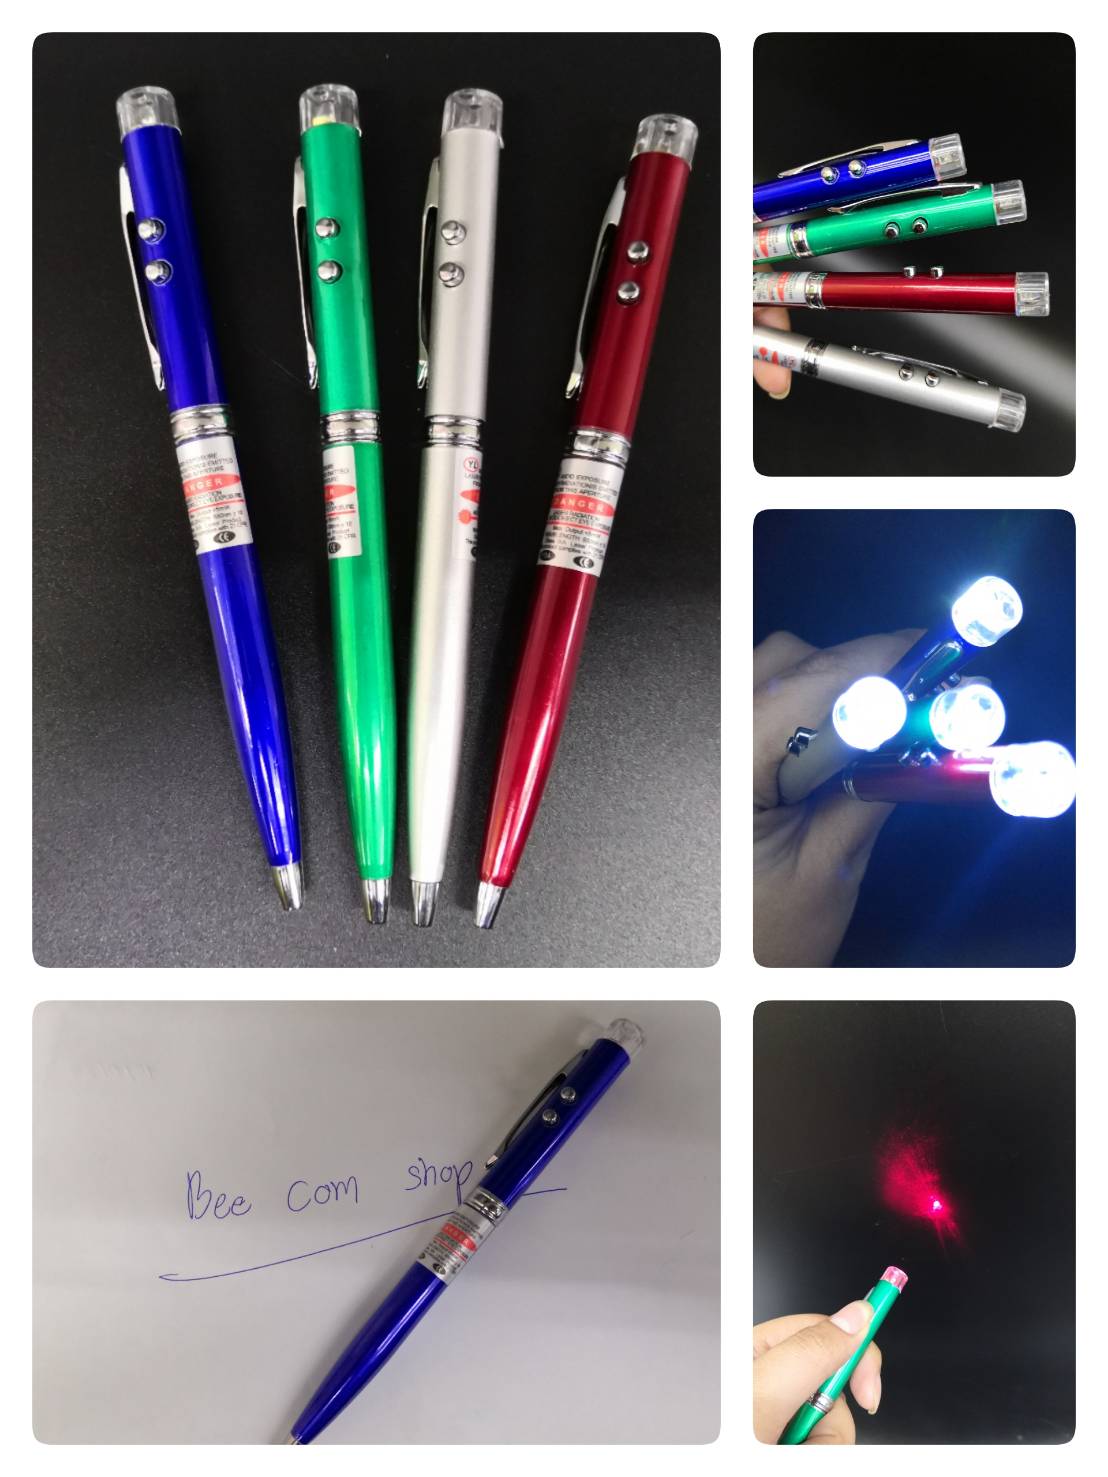 ปากกาพร้อมเลเซอร์พ้อยเตอร์เป็นแสงเลเซอร์สีแดง พร้อมไฟกระพริบส่องสว่างได้ 4 แบบ